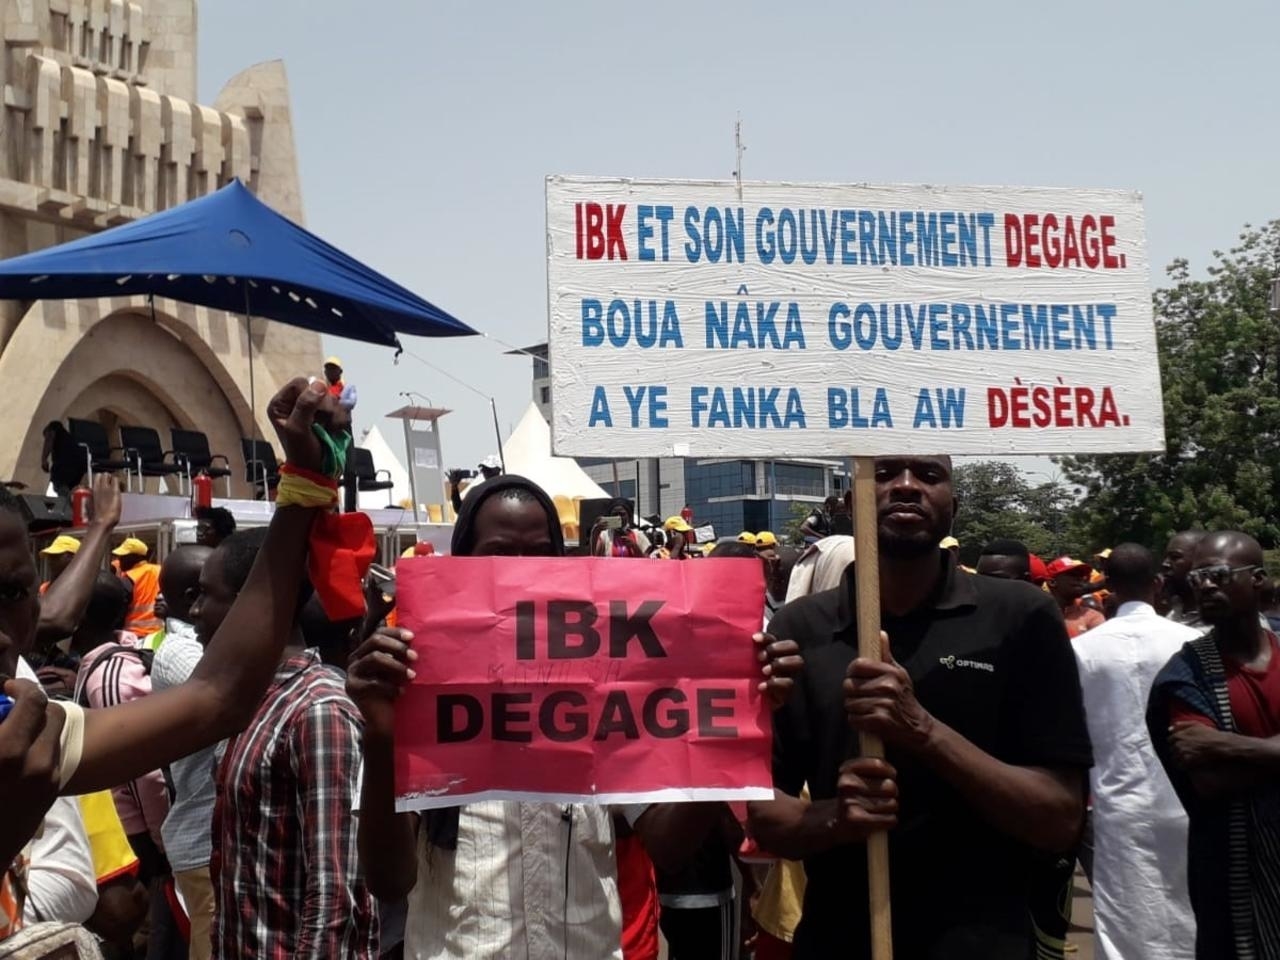 L’opposition malienne rejette les propositions de la CEDEAO et s’accroche à la démission d’IBK